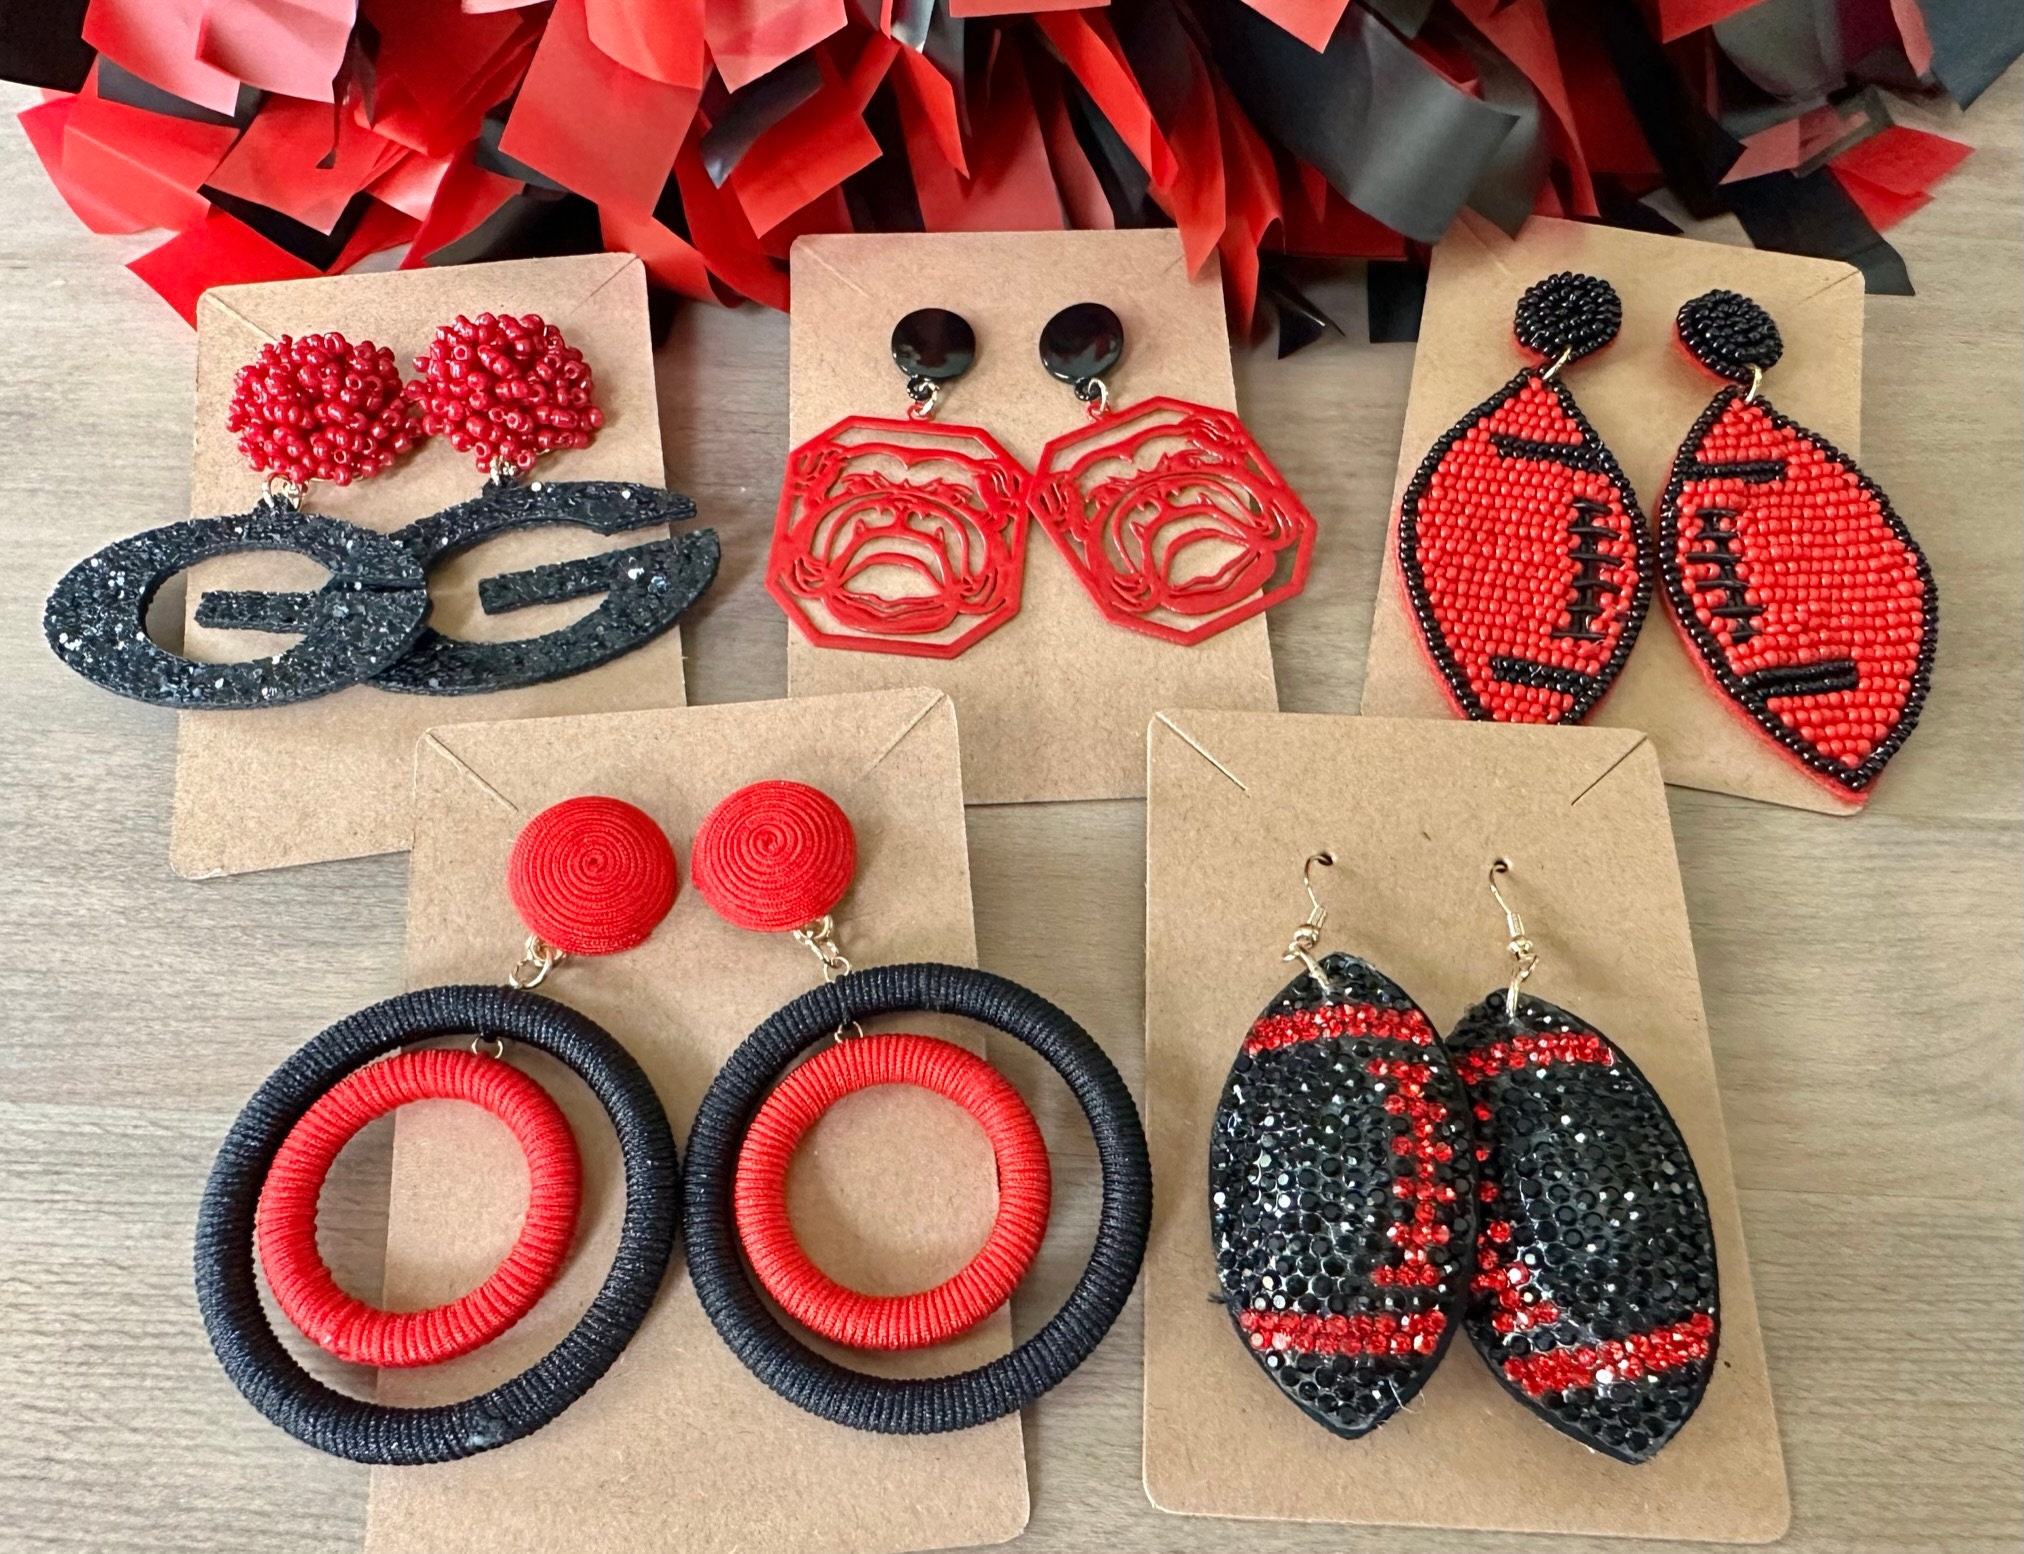 Red Swarovski Crystal Earrings, Long Red Earrings, Red Crystal Earrings,  Colorful Earrings, Red Jewelry 